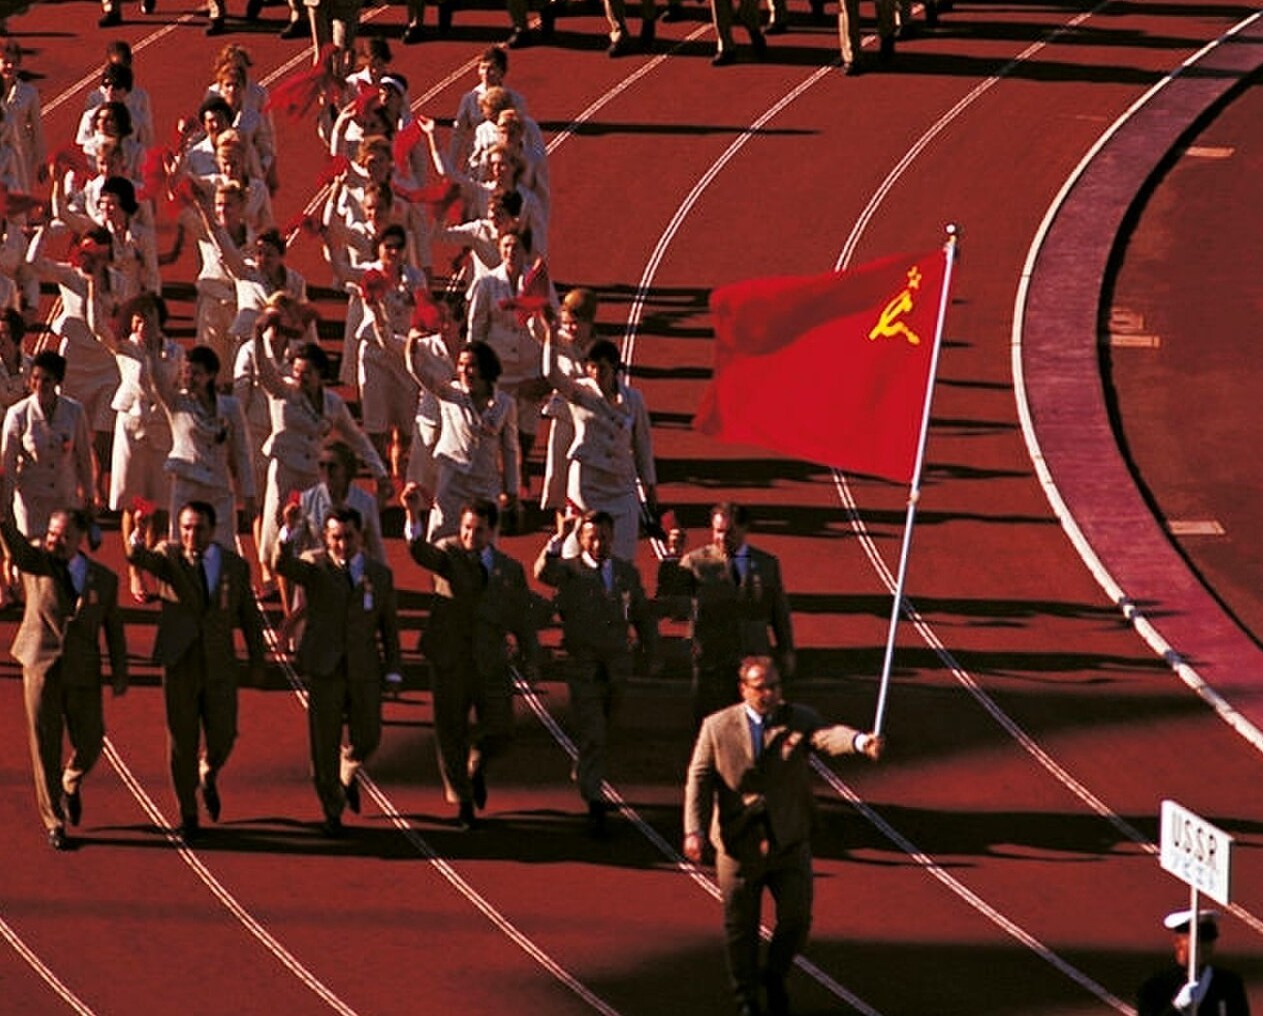 Российские спортсмены под флагом ссср